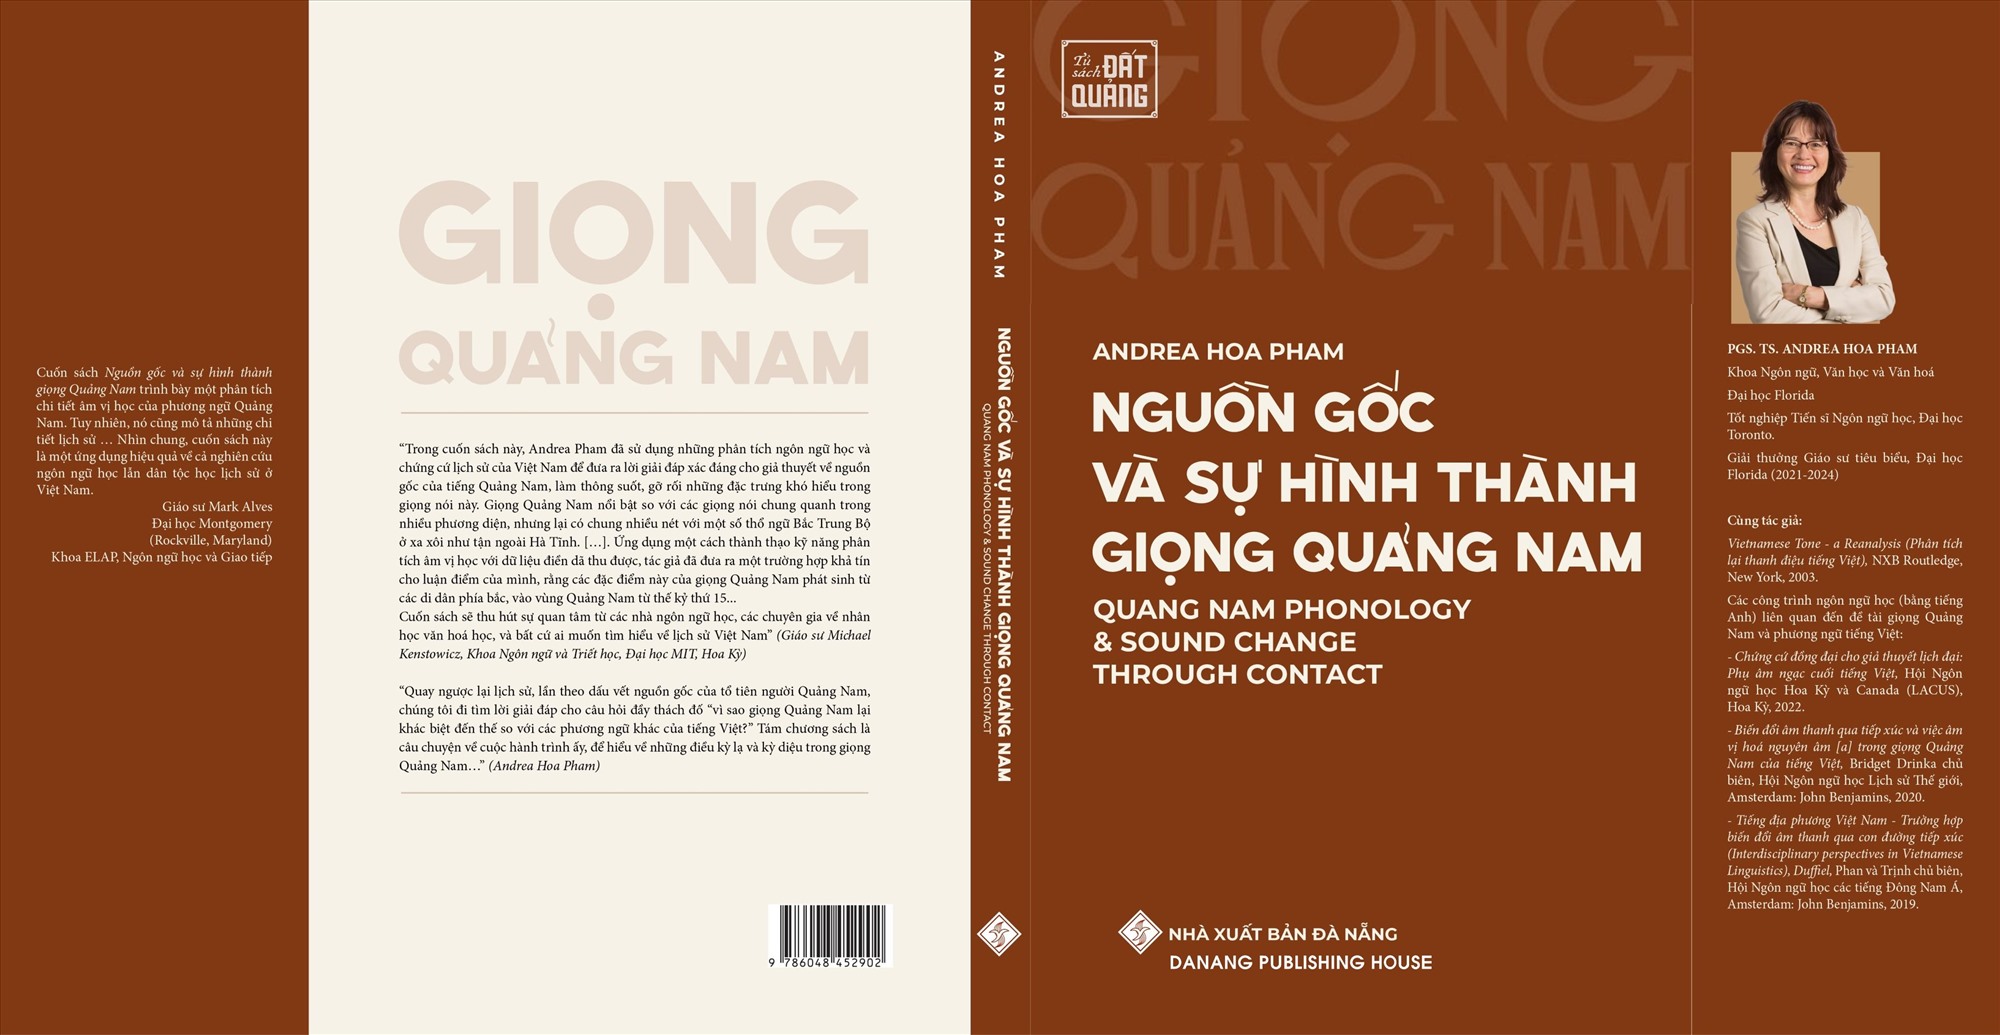 Bìa sách “Nguồn gốc và sự hình thành giọng Quảng Nam”.